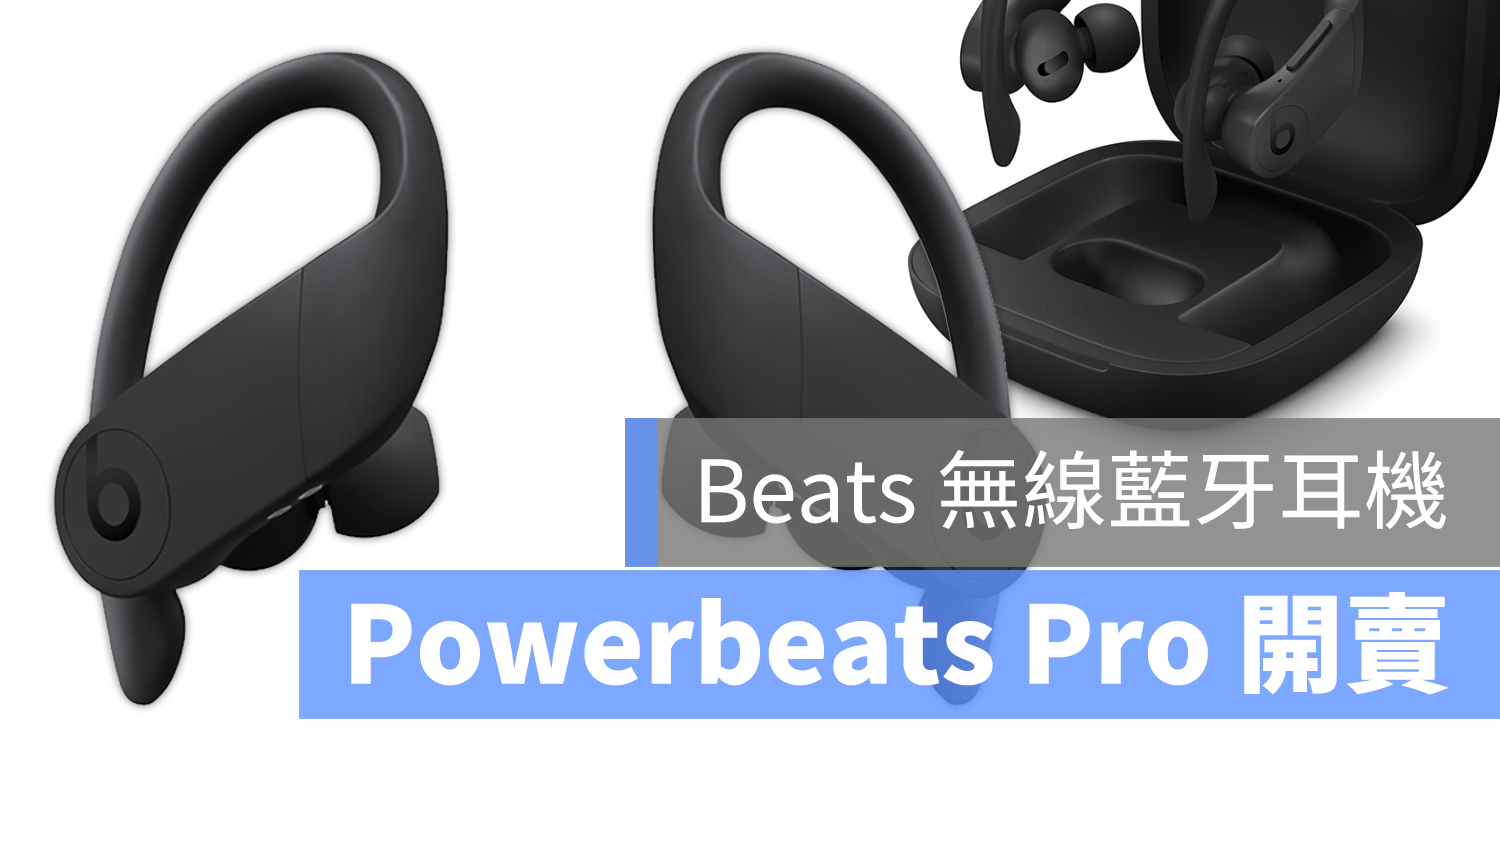 Powerbeats Pro 上市 台灣